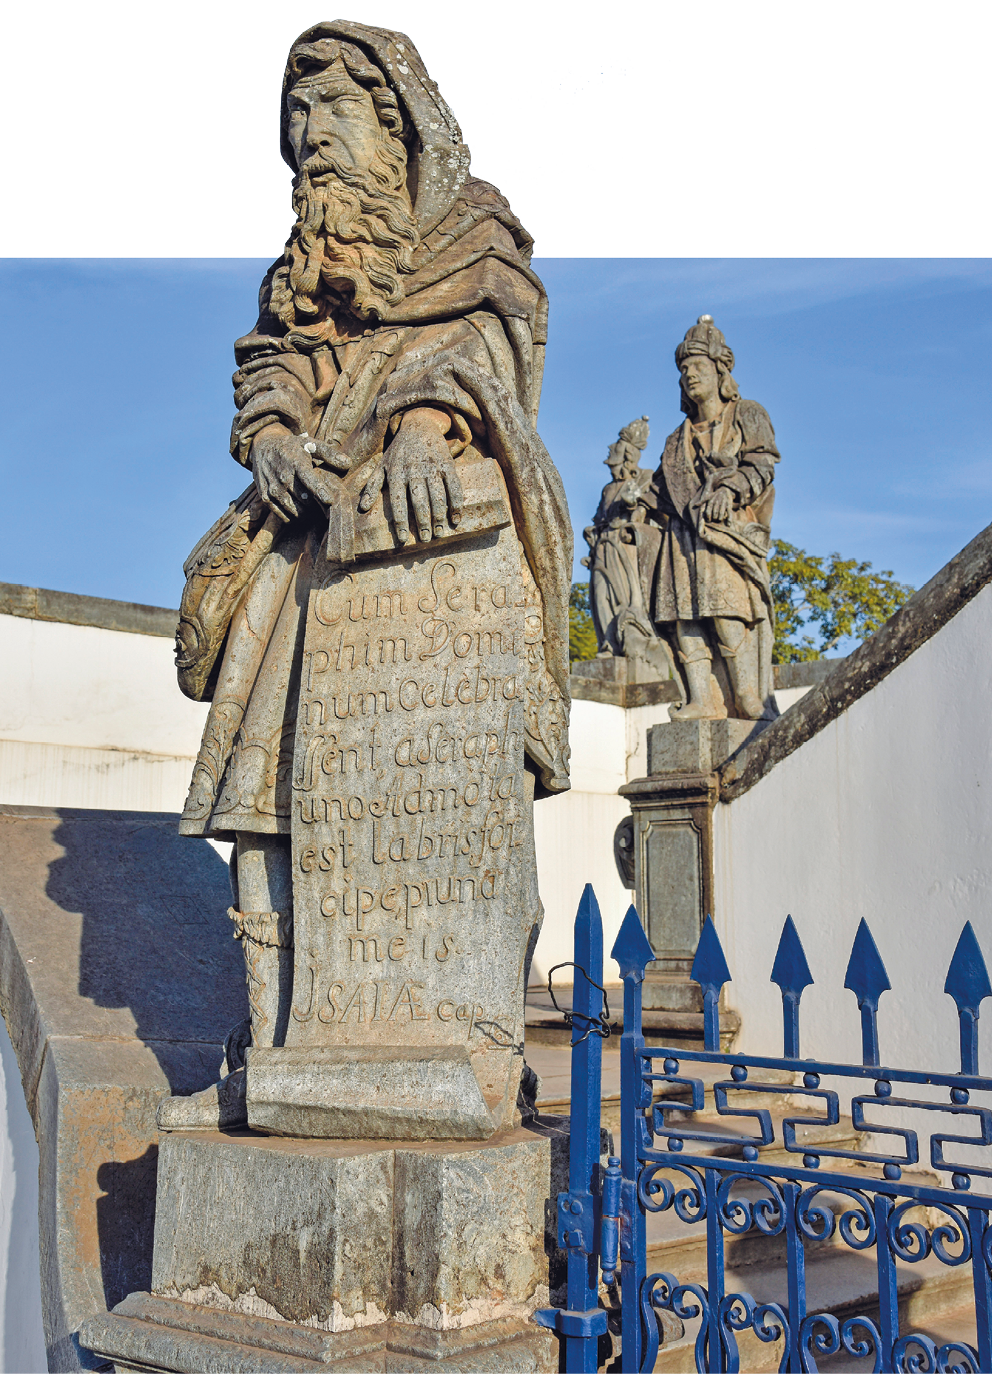 Fotografia. À frente de uma construção, próximo a um portão, uma estátua feita de rocha. Ela representa um homem que usa capuz, tecidos envoltos no corpo, cabelo e barba longos. Segura um papiro com inscrições. Ao fundo, outras duas estátuas que representam pessoas em pé.